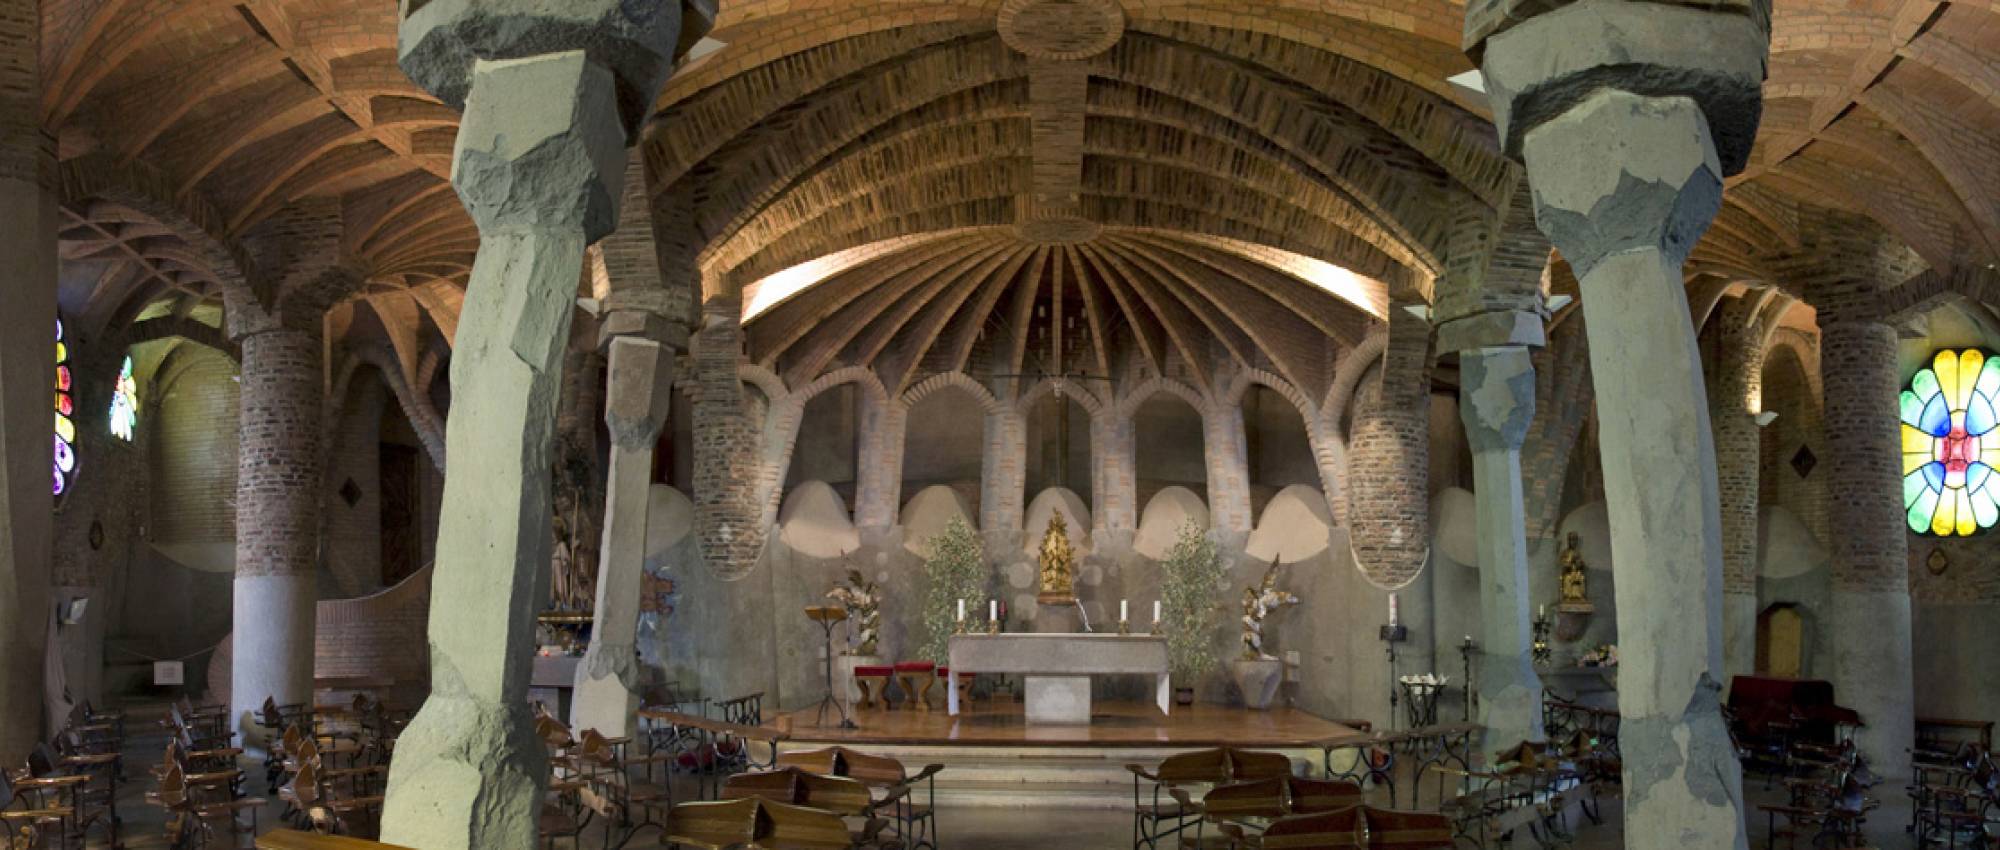 Cripta de la Colònia Güell, d'Antoni Gaudí. jorapa / Flickr. CC BY-SA 2.0